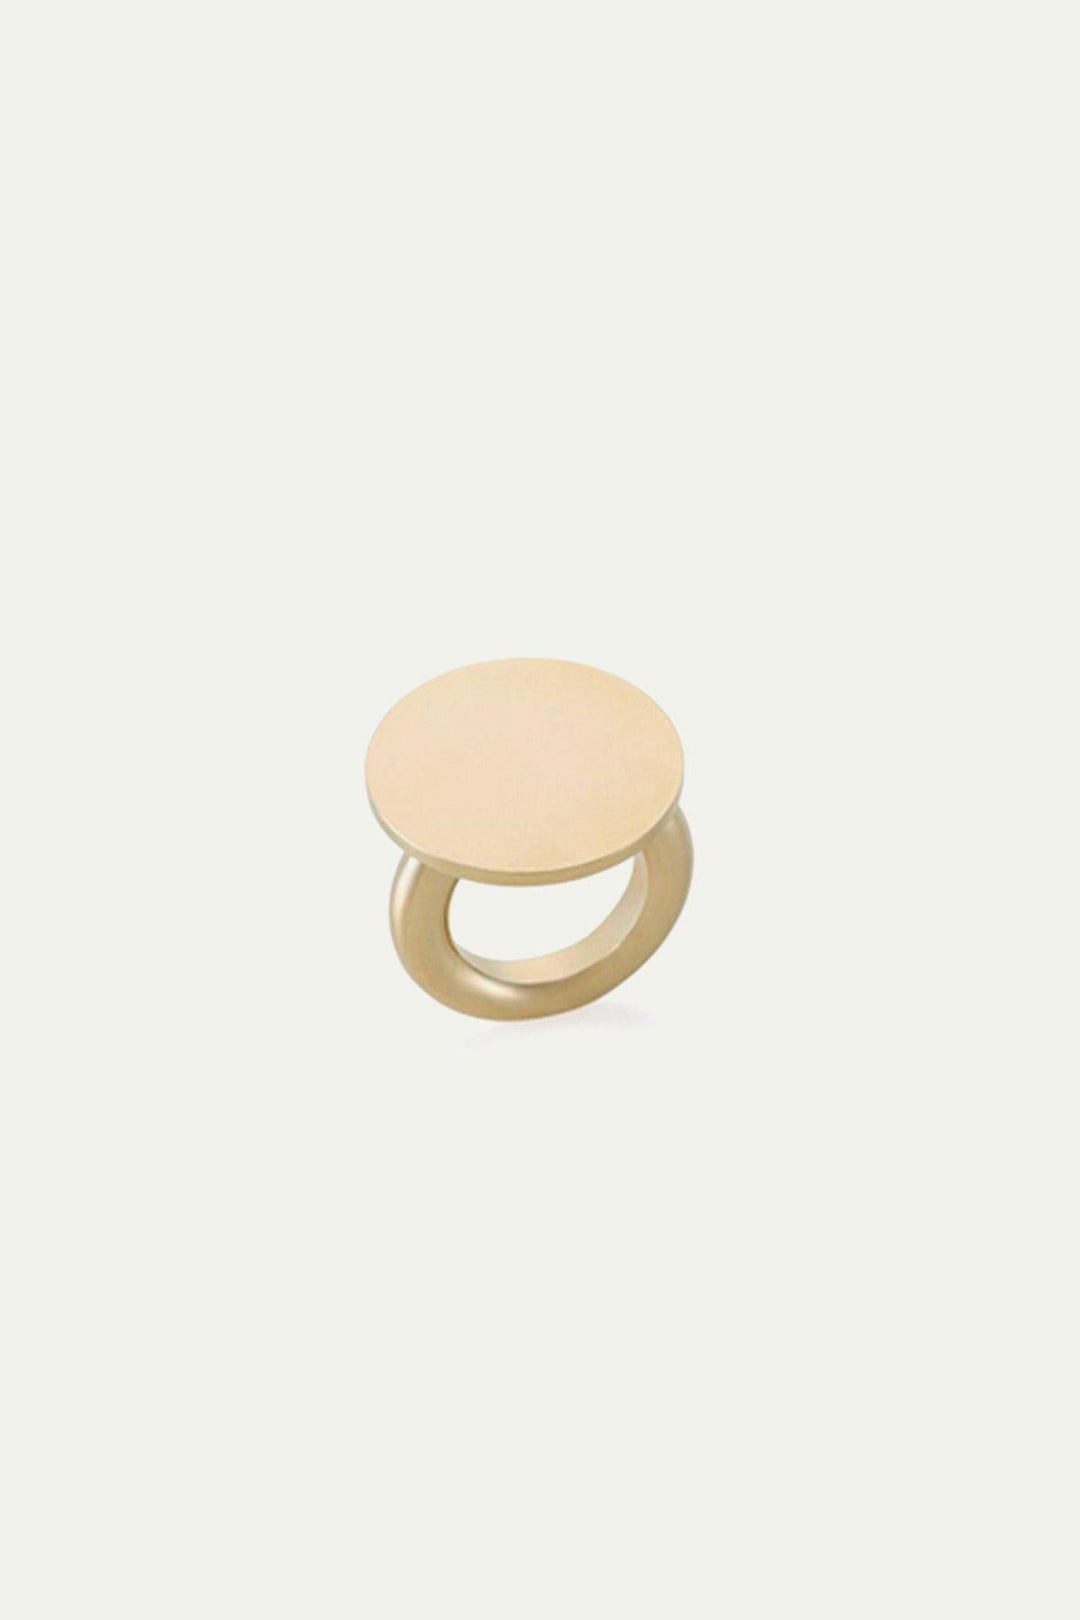 טבעת אבלון מטבע בצבע זהב - Noritamy